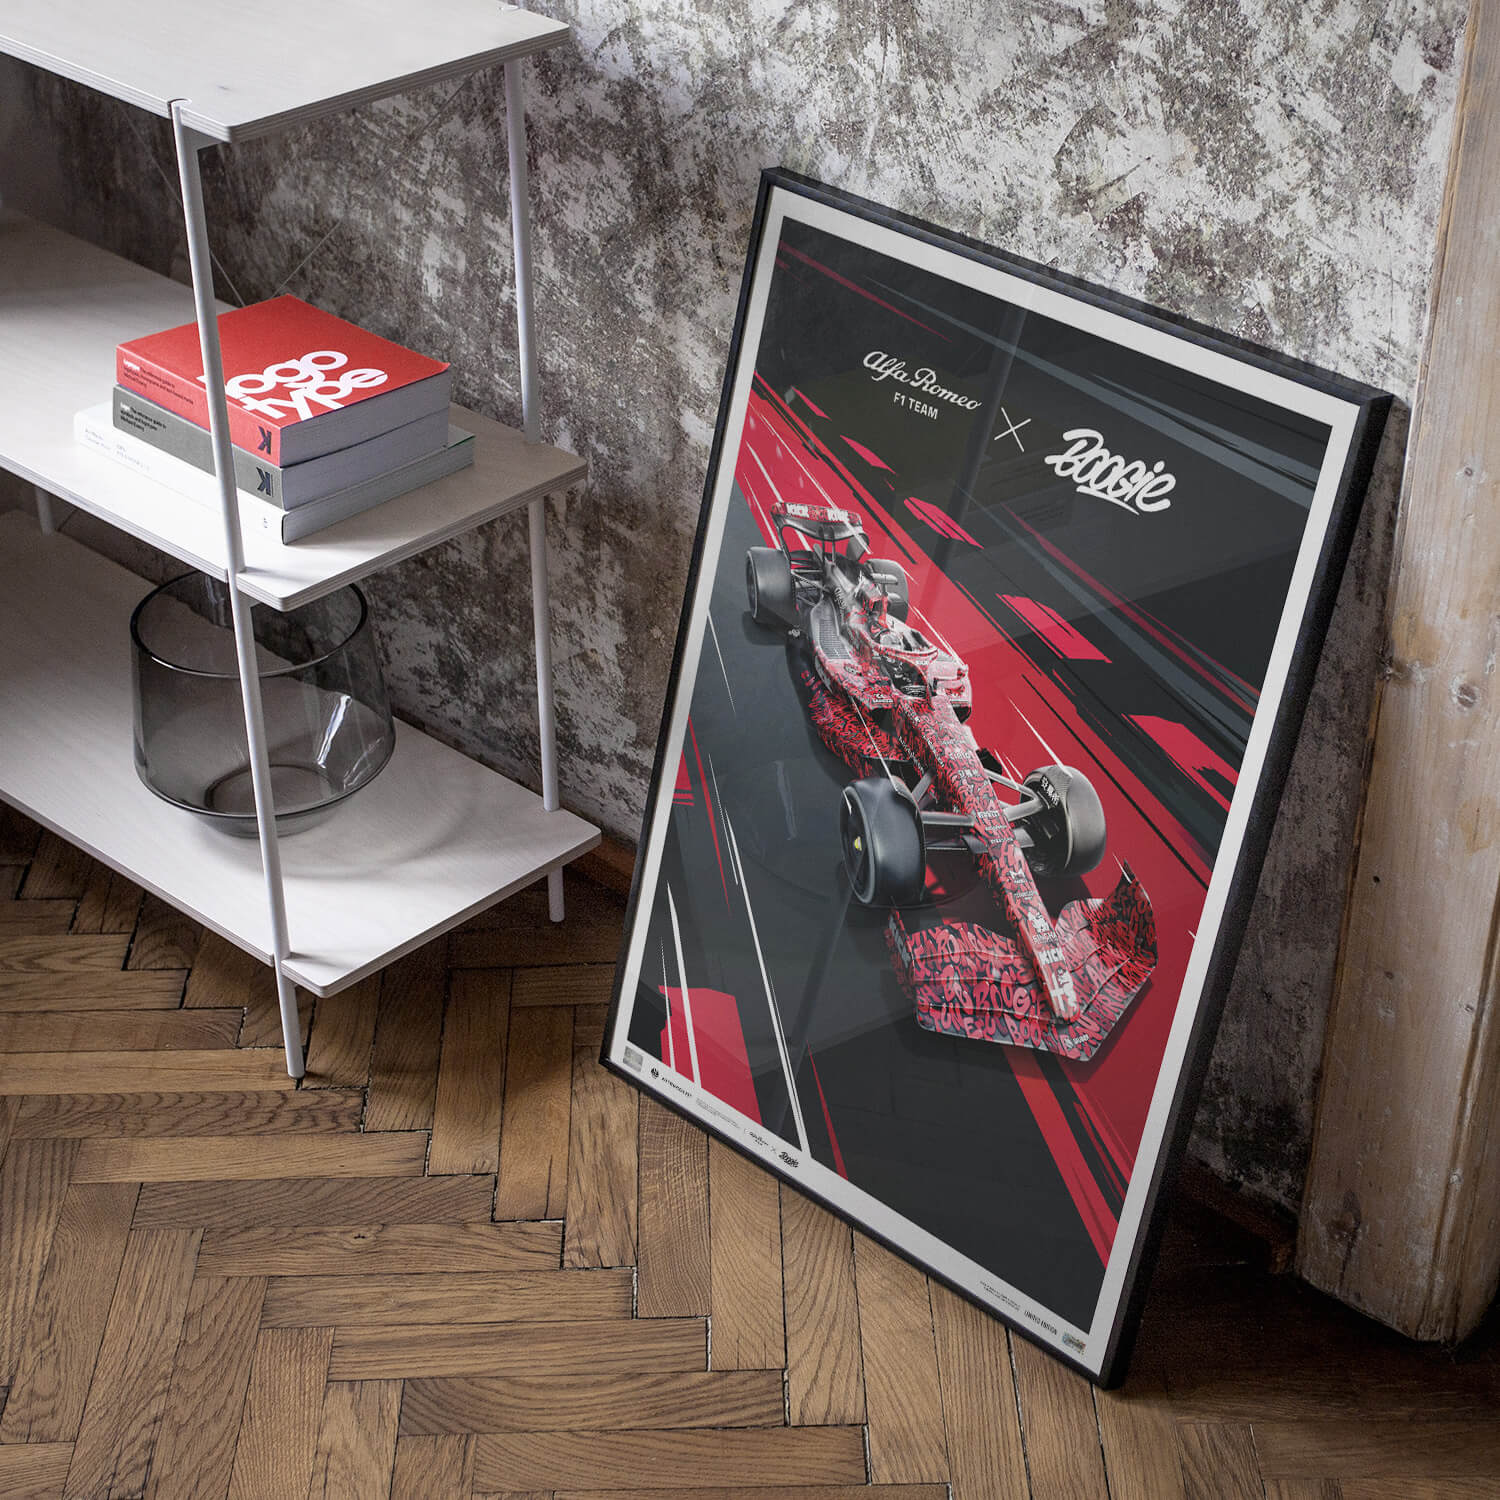 Alfa Romeo F1 Team x BOOGIE - Art Car - Dutch Grand Prix - 2023